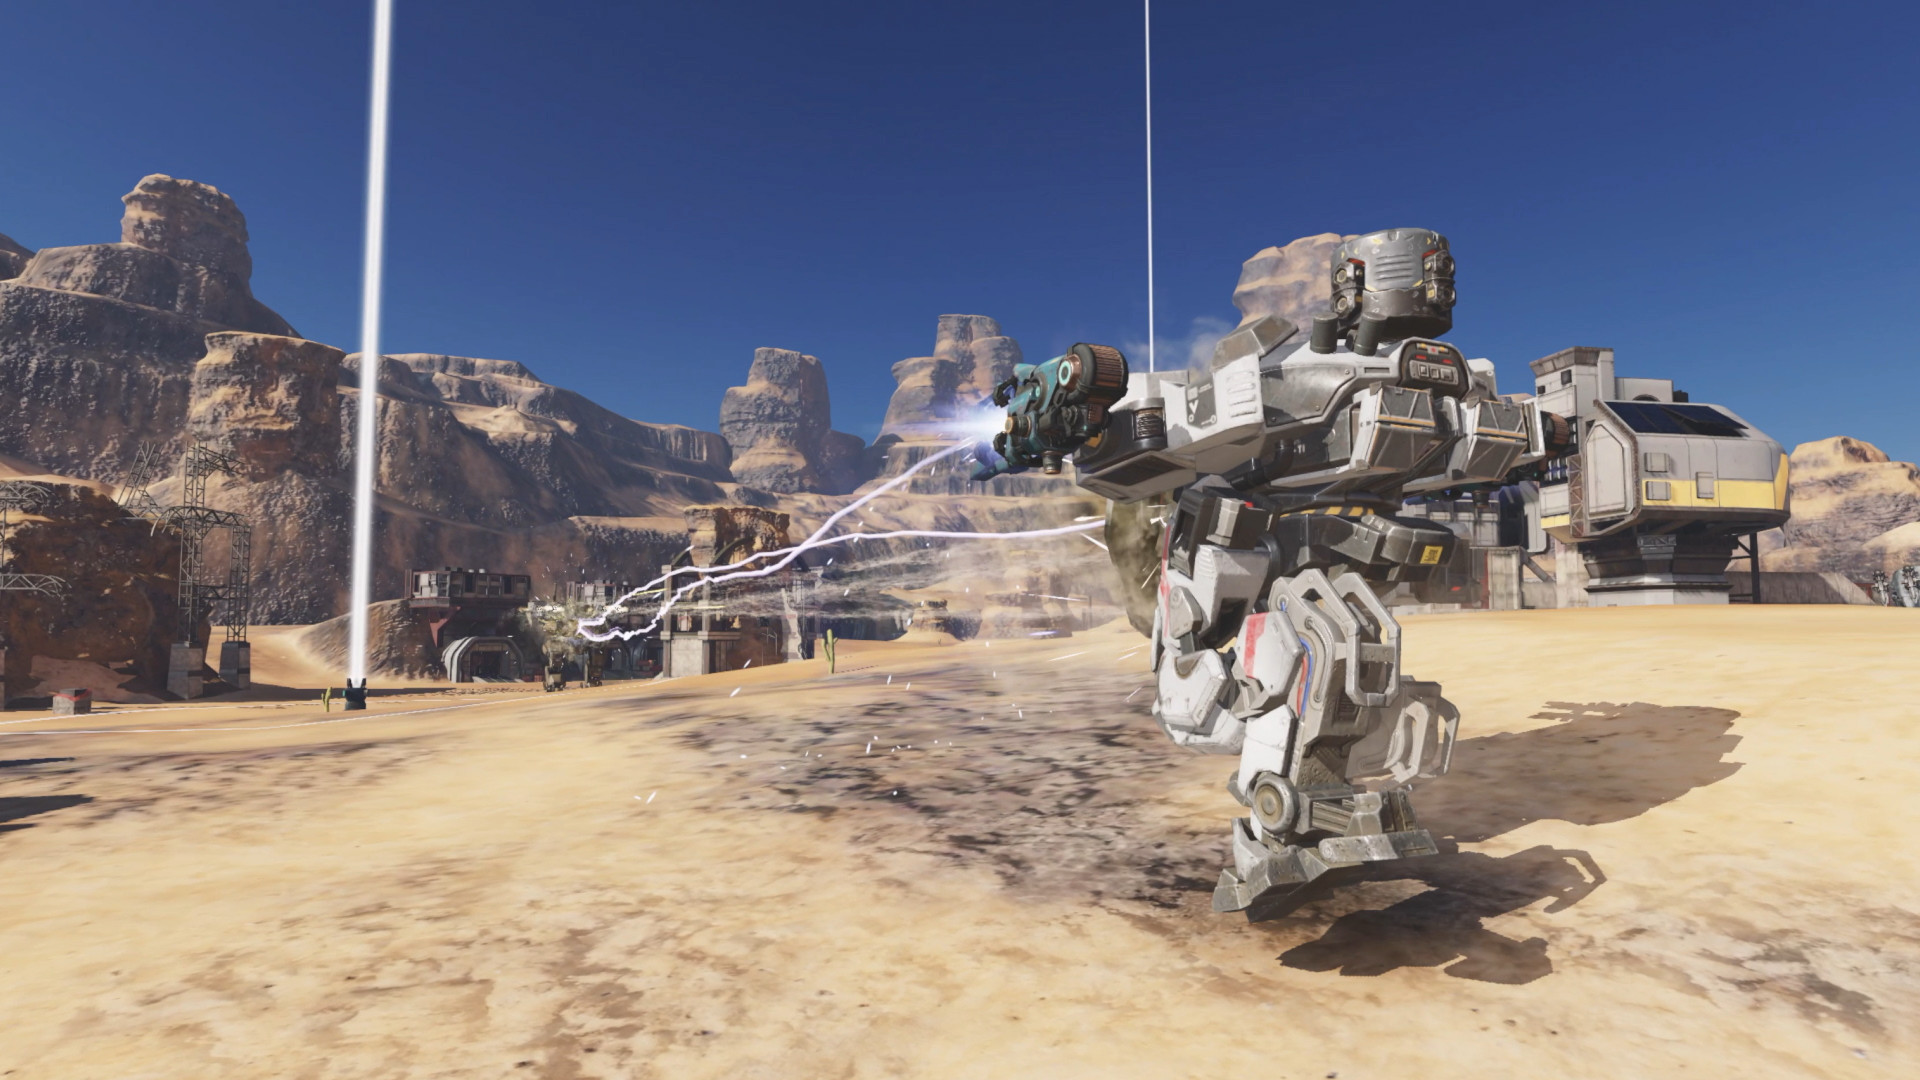 War Robots screenshot